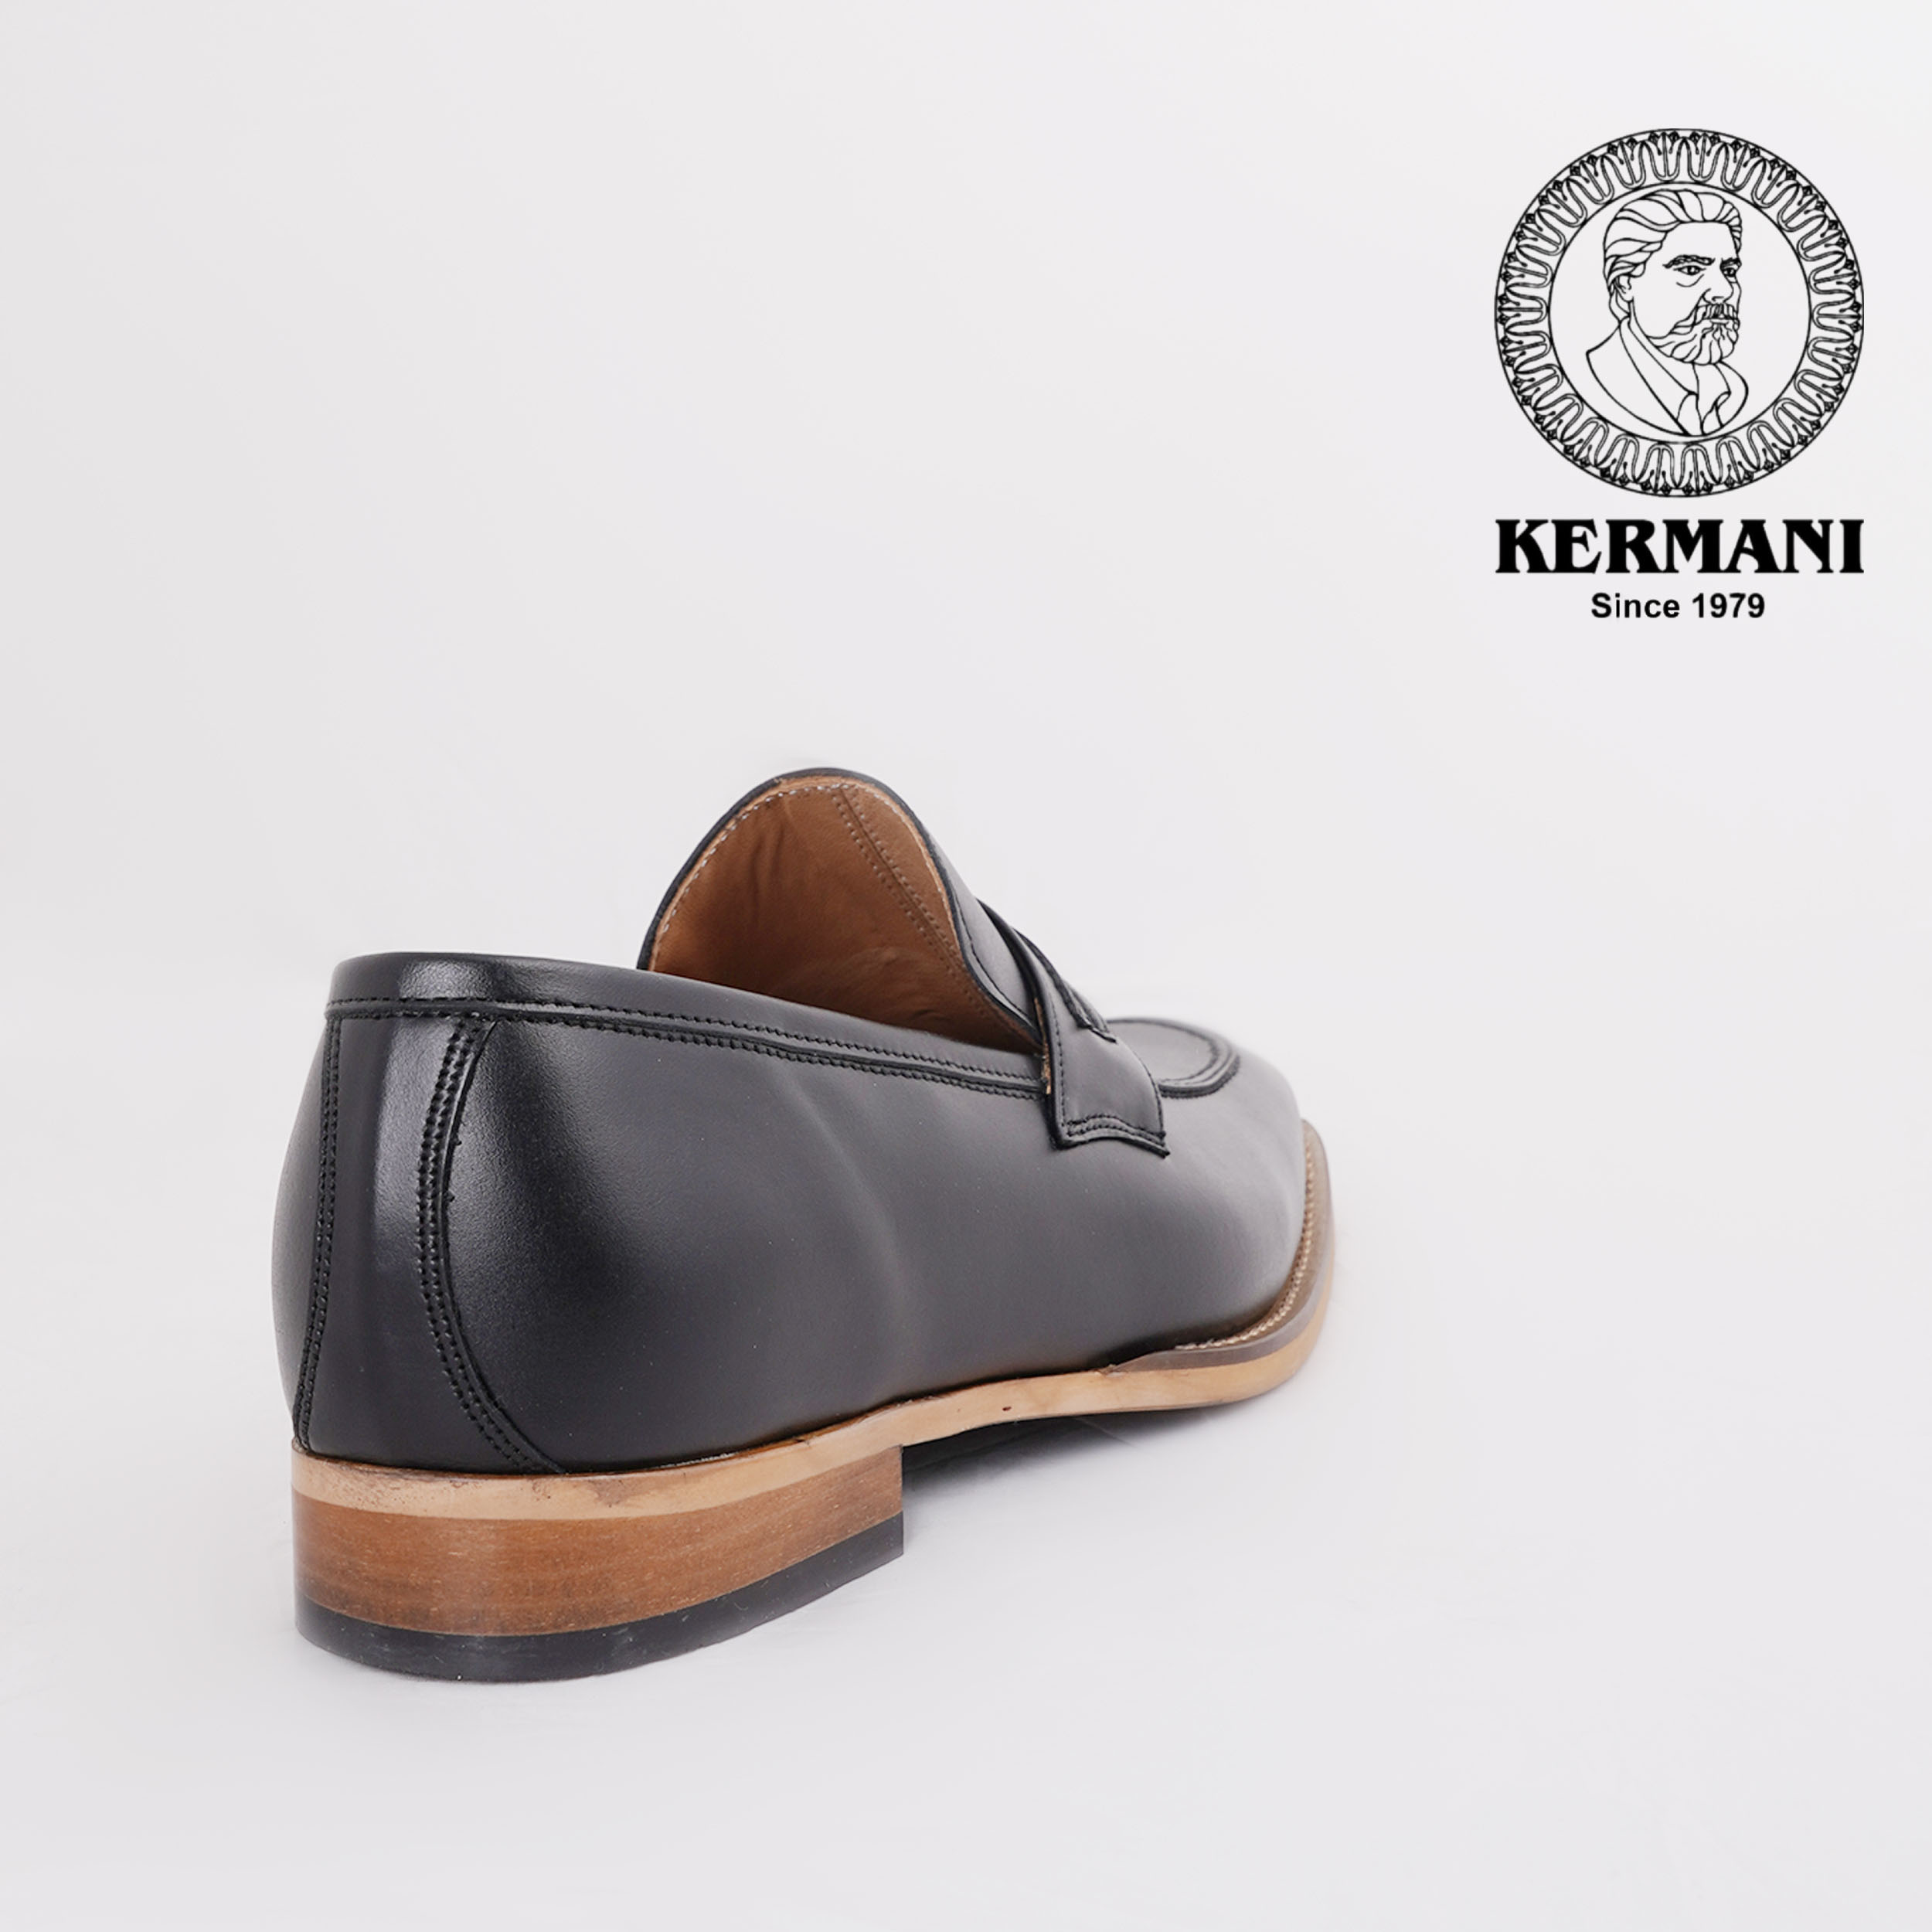 کفش مردانه کرمانی مدل چرم دستدوز طبیعی کد 1064 رنگ مشکی -  - 5